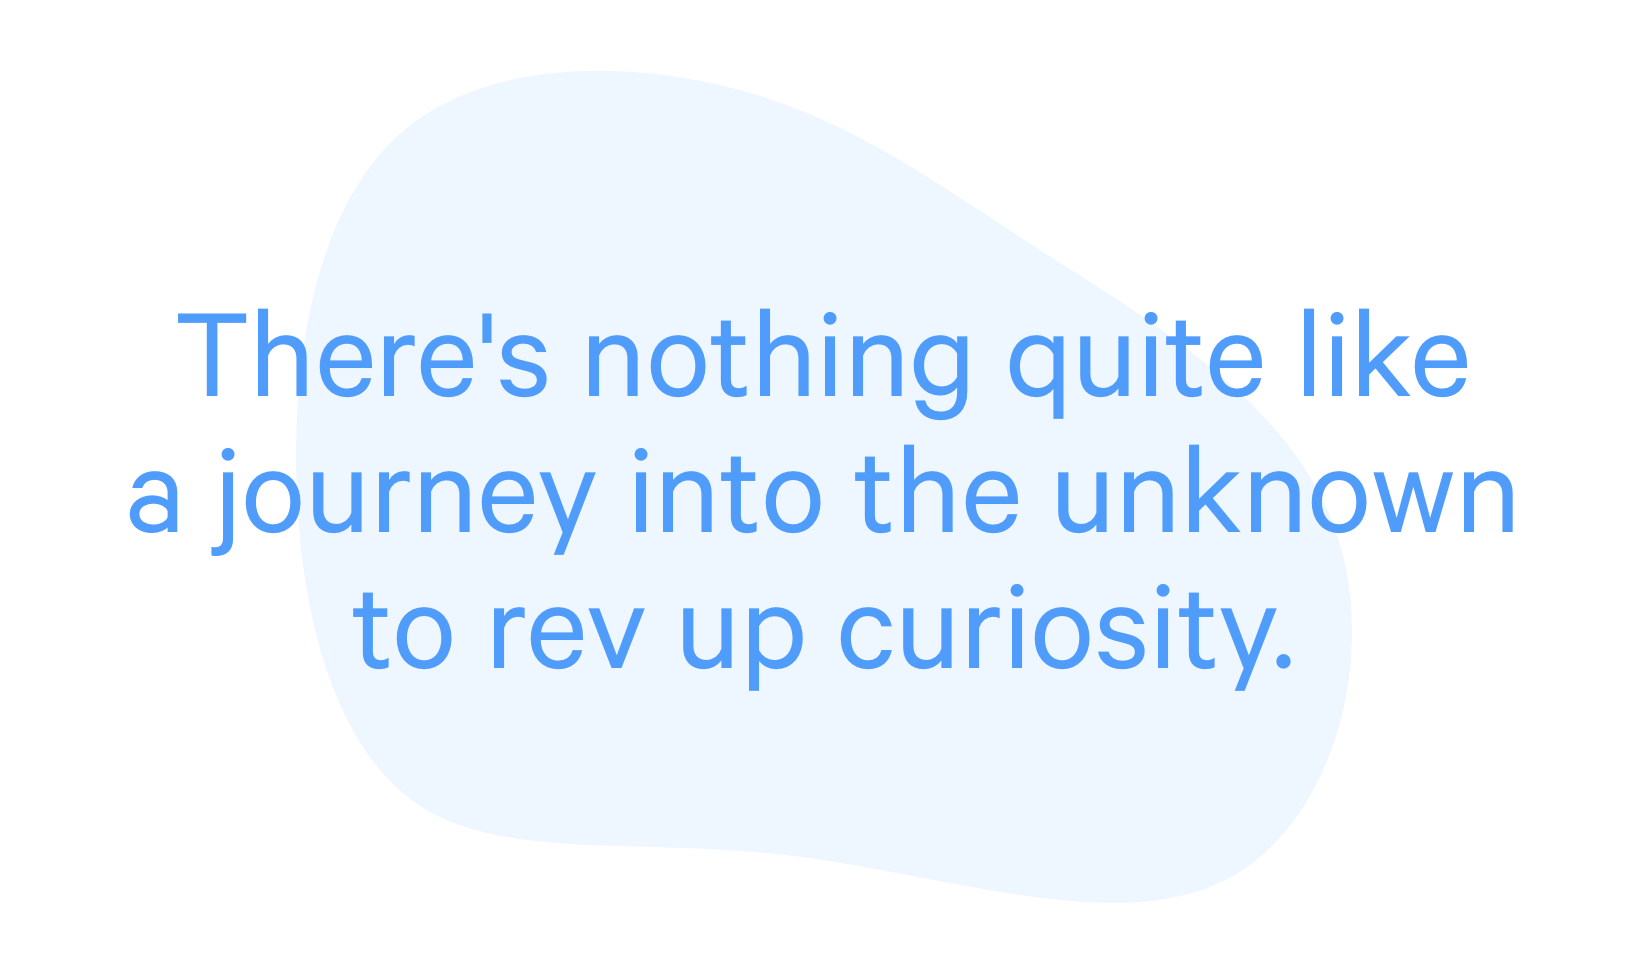 qoute about curiosity